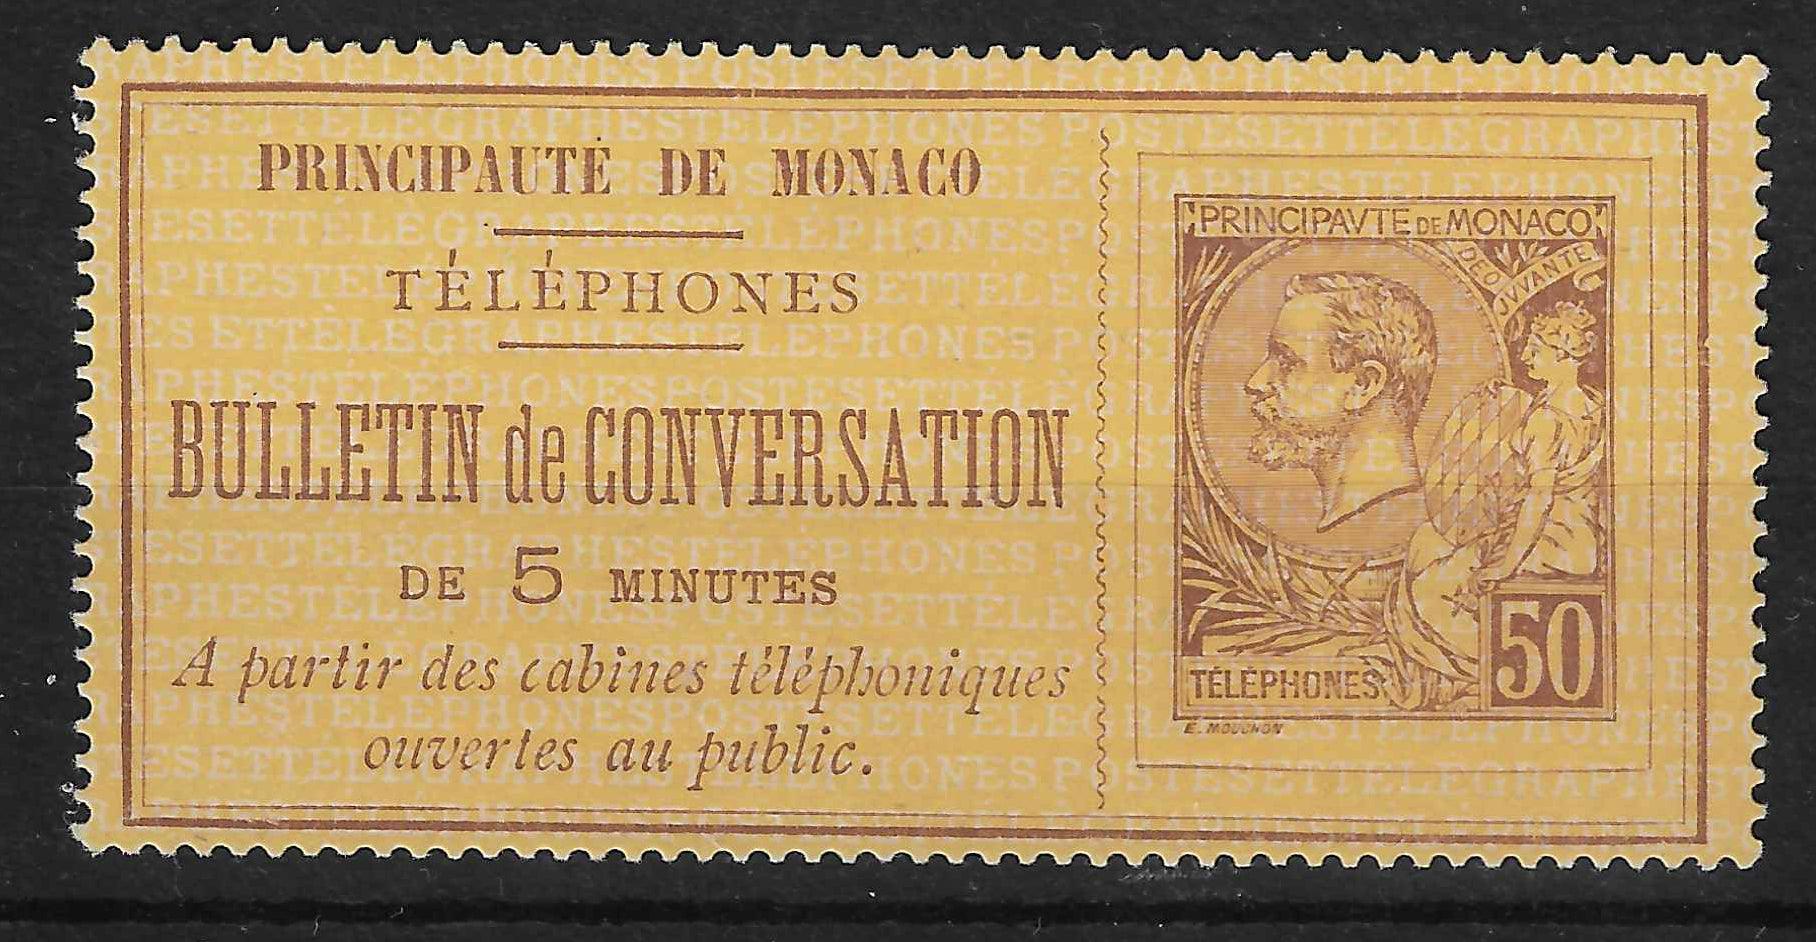 Monaco - timbre-téléphone n°1 - neuf - SUP - signé et avec certificat Calves - Calves